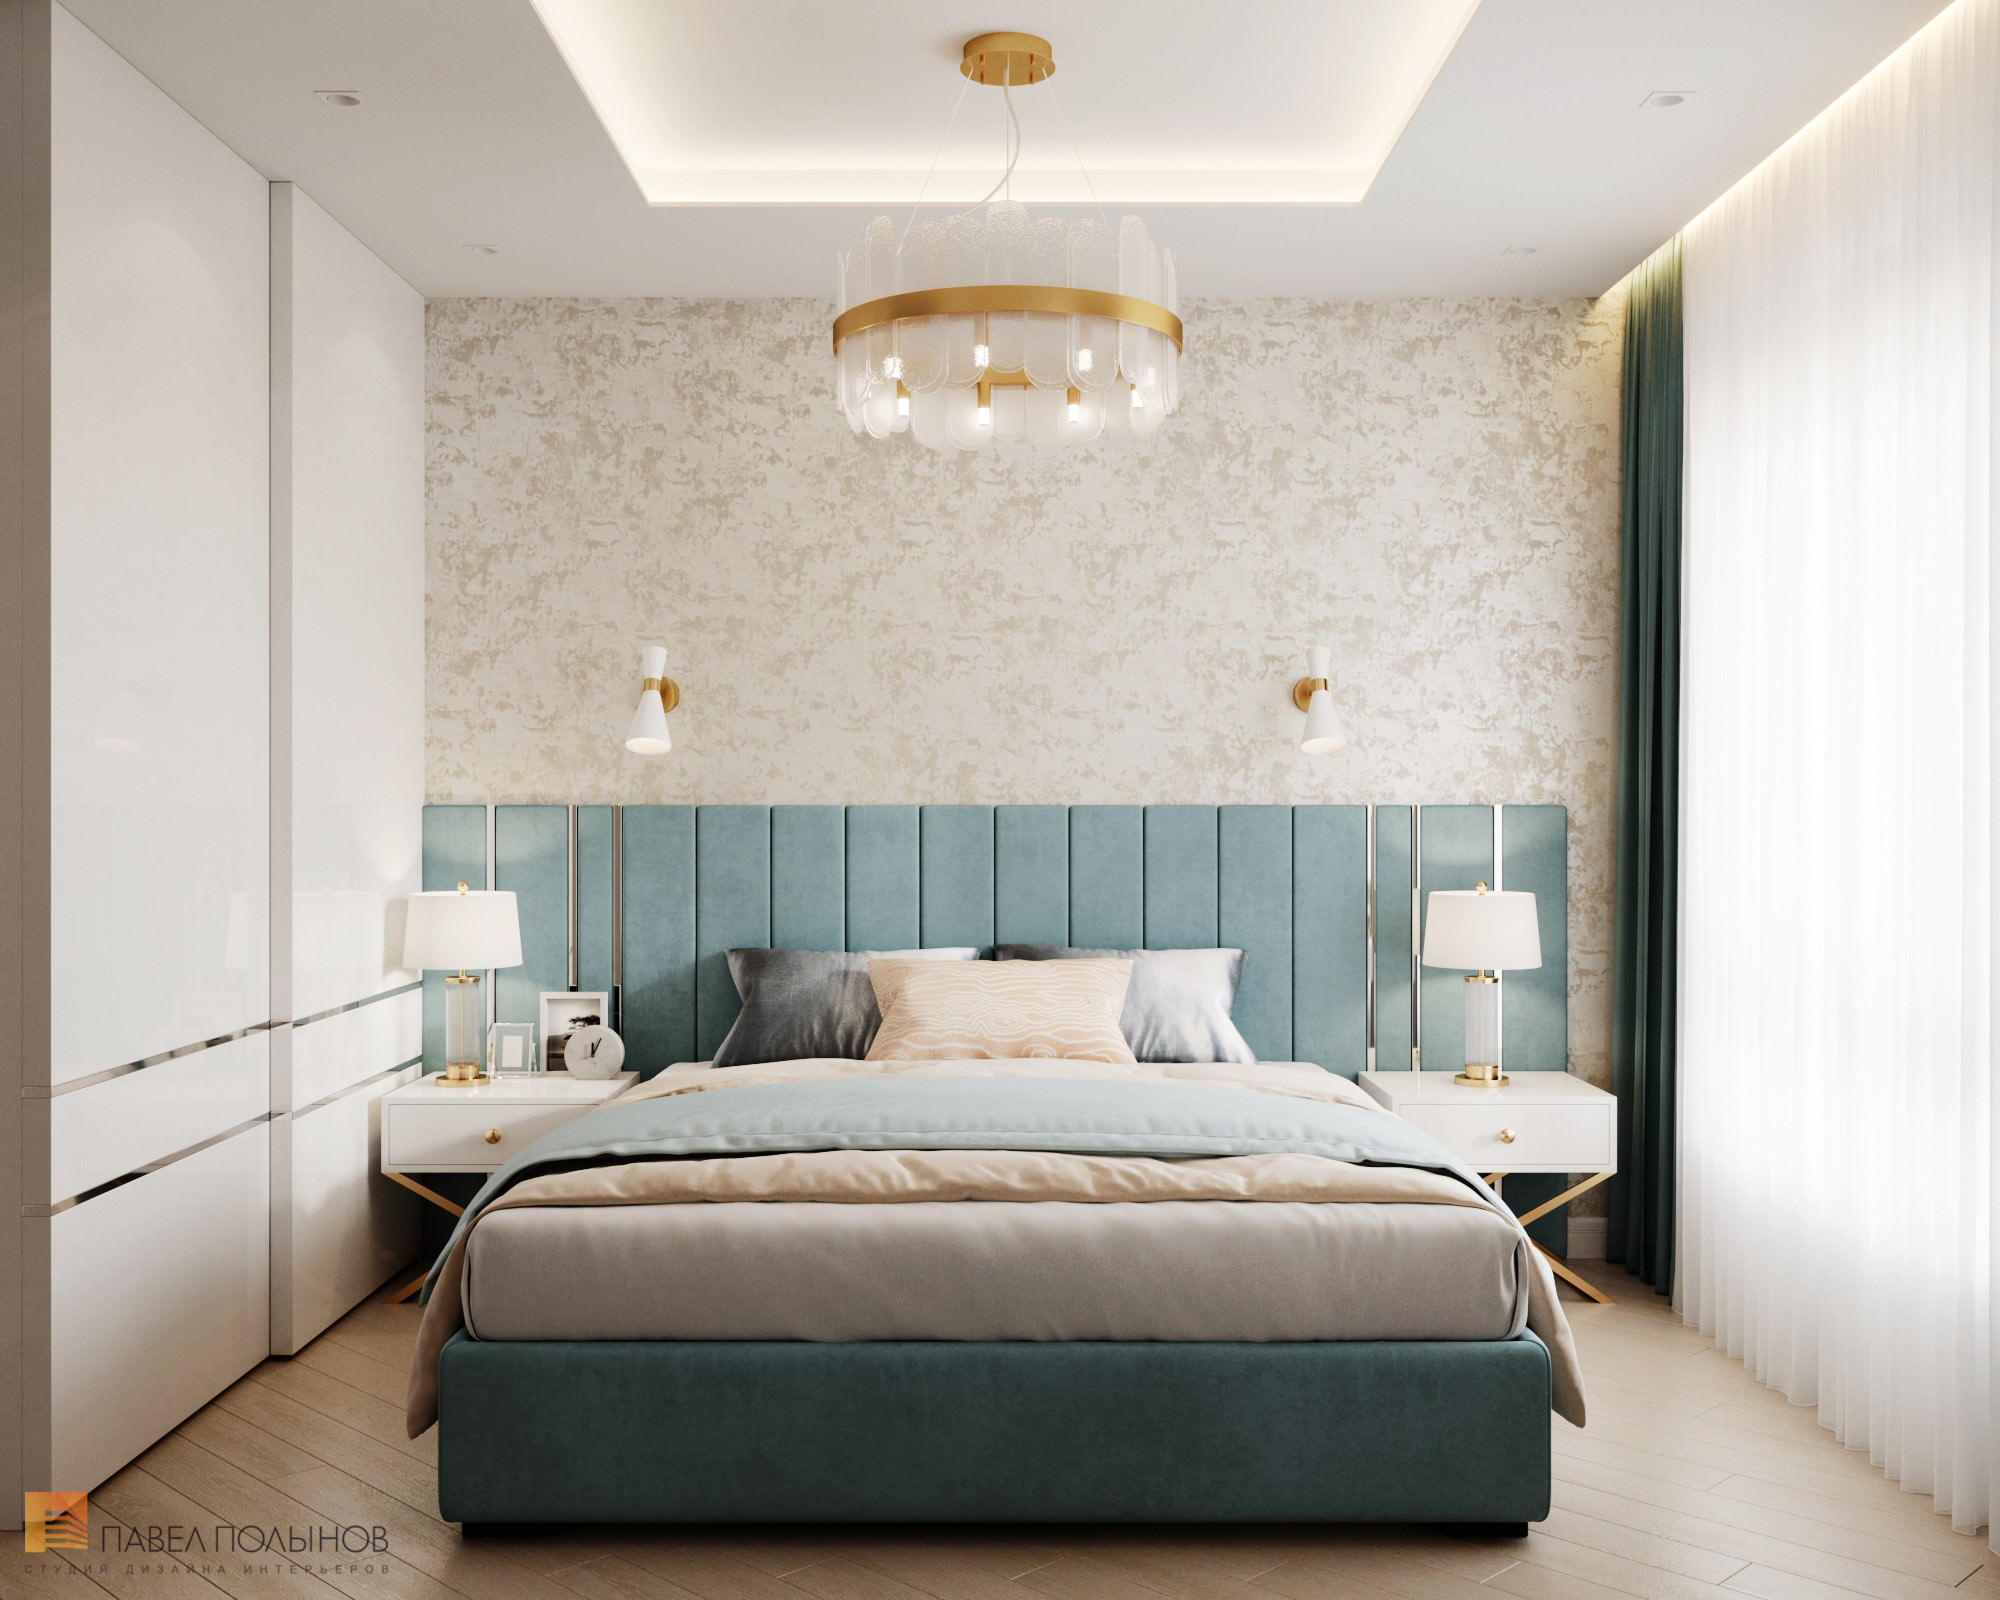 Фото дизайн интерьера спальни из проекта «Квартира в современном стиле, ЖК «Аннино парк», 54 кв.м.»